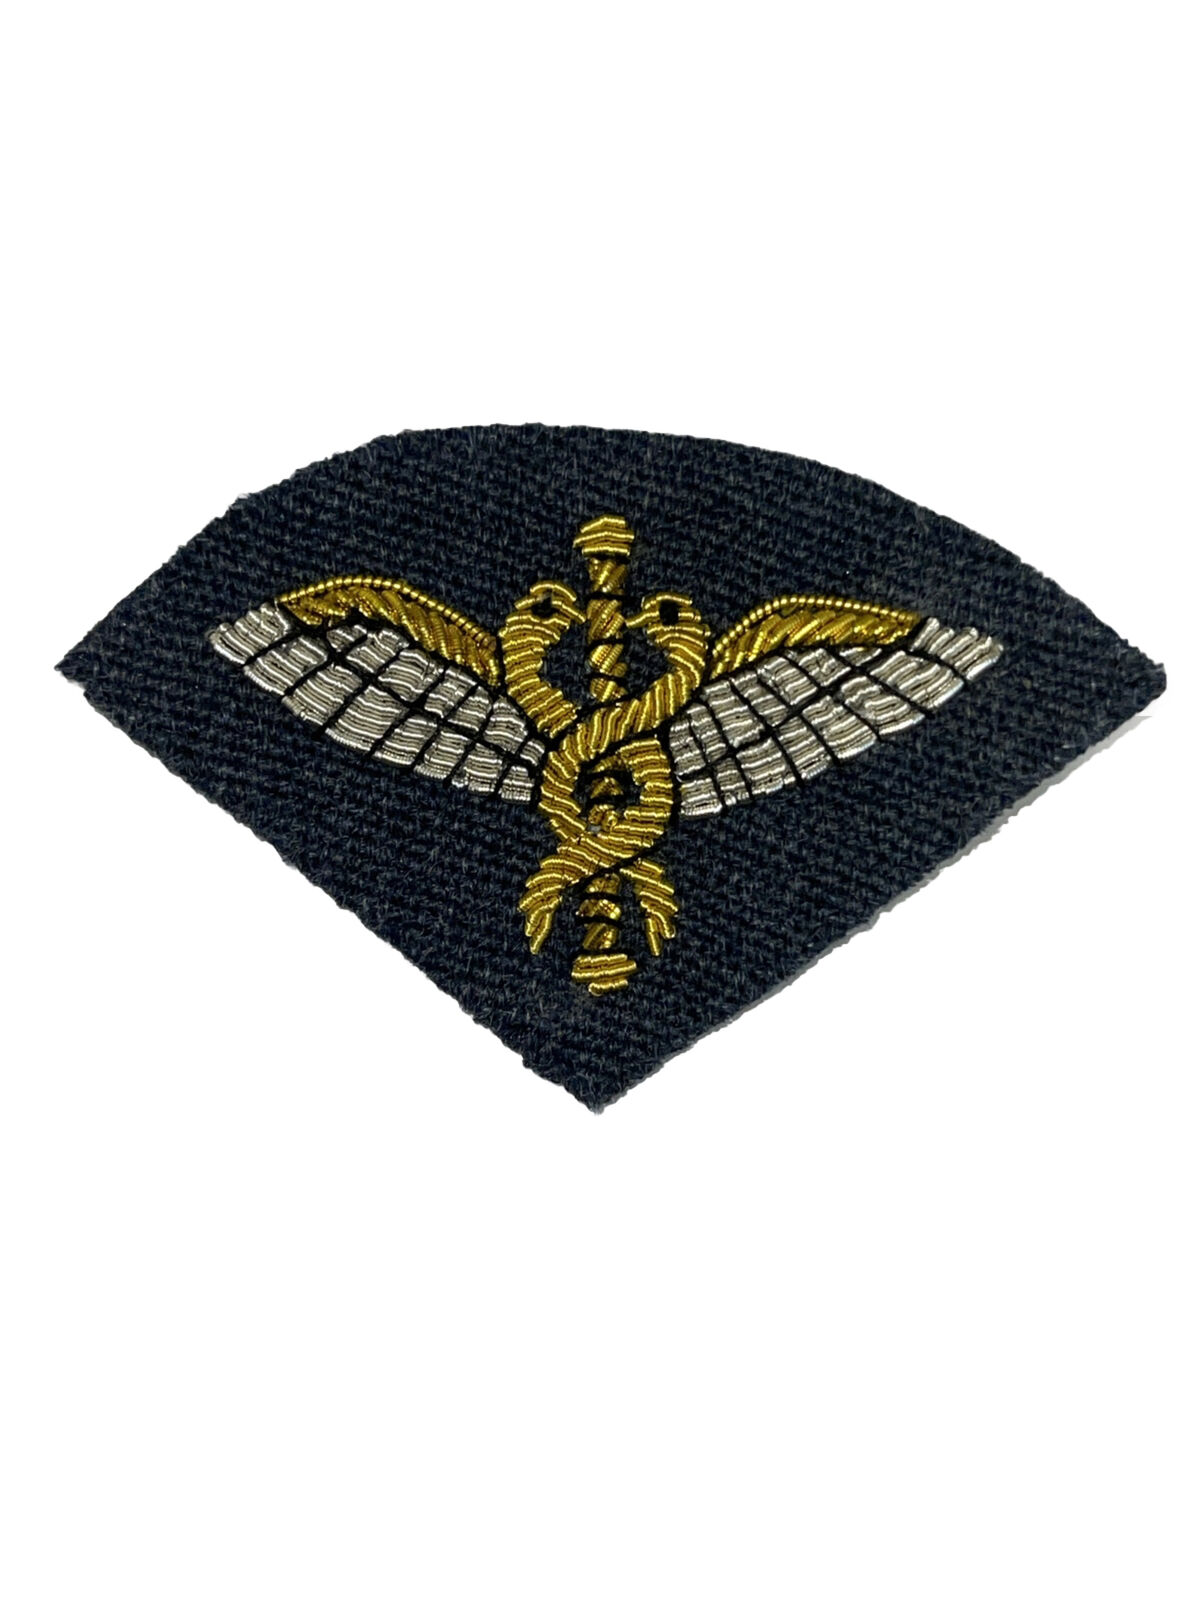 Raf Flight Medical No5 Badge 